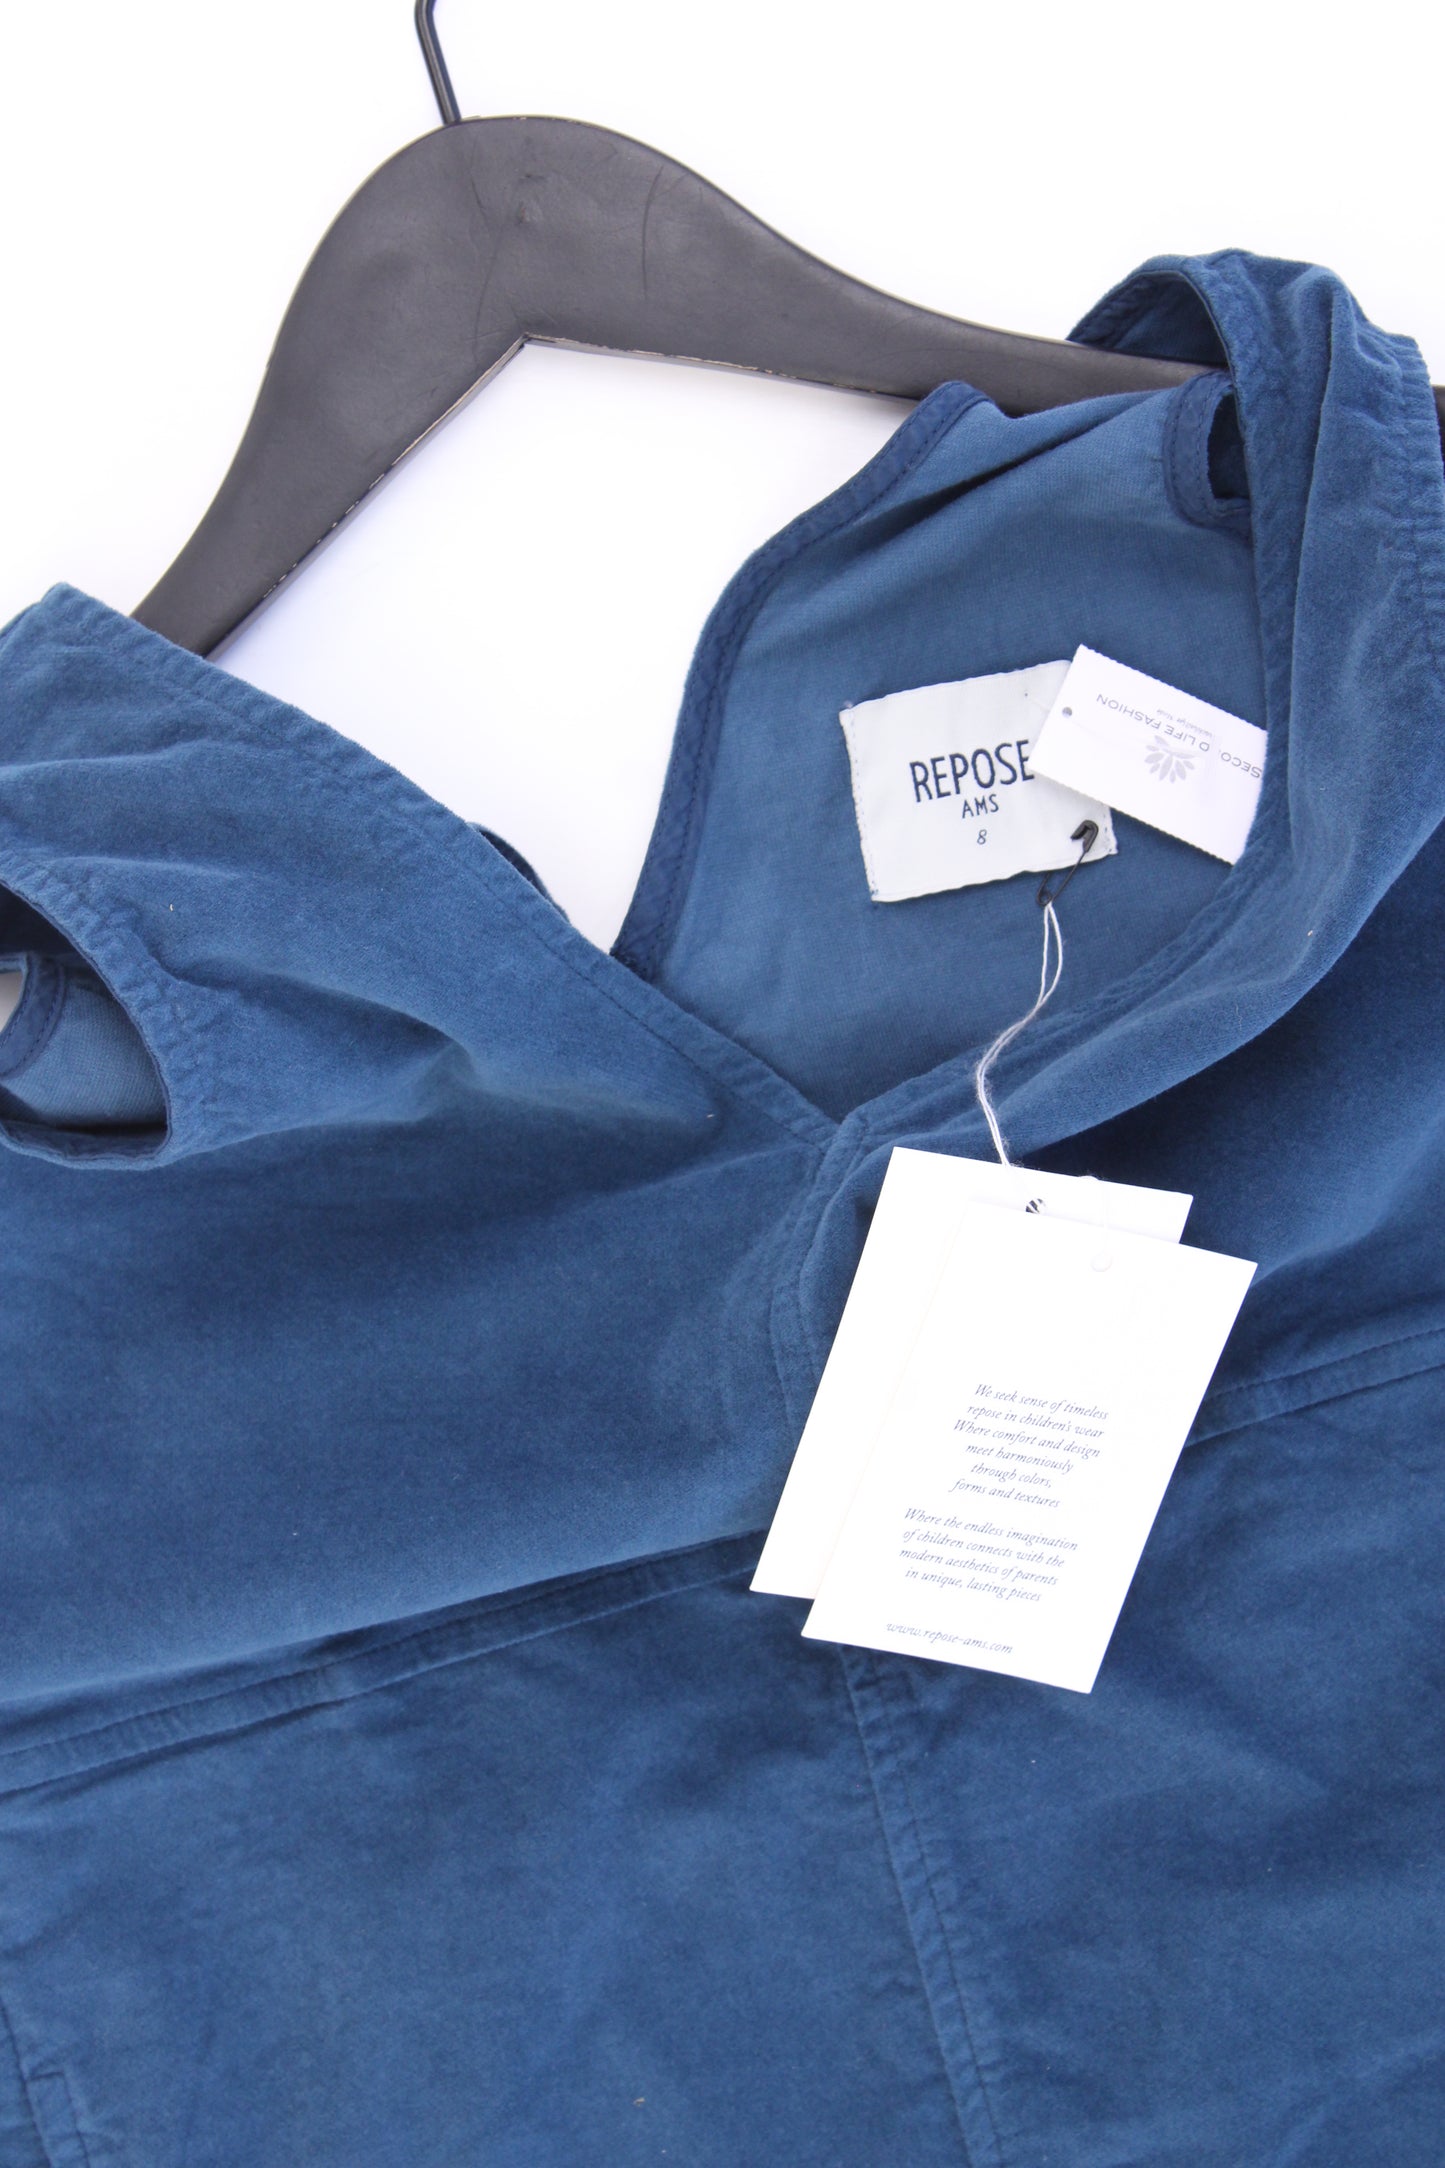 Repose AMS Shift Dress Kinder Trägerkleid blau Größe 8 Jahre neu mit Etikett